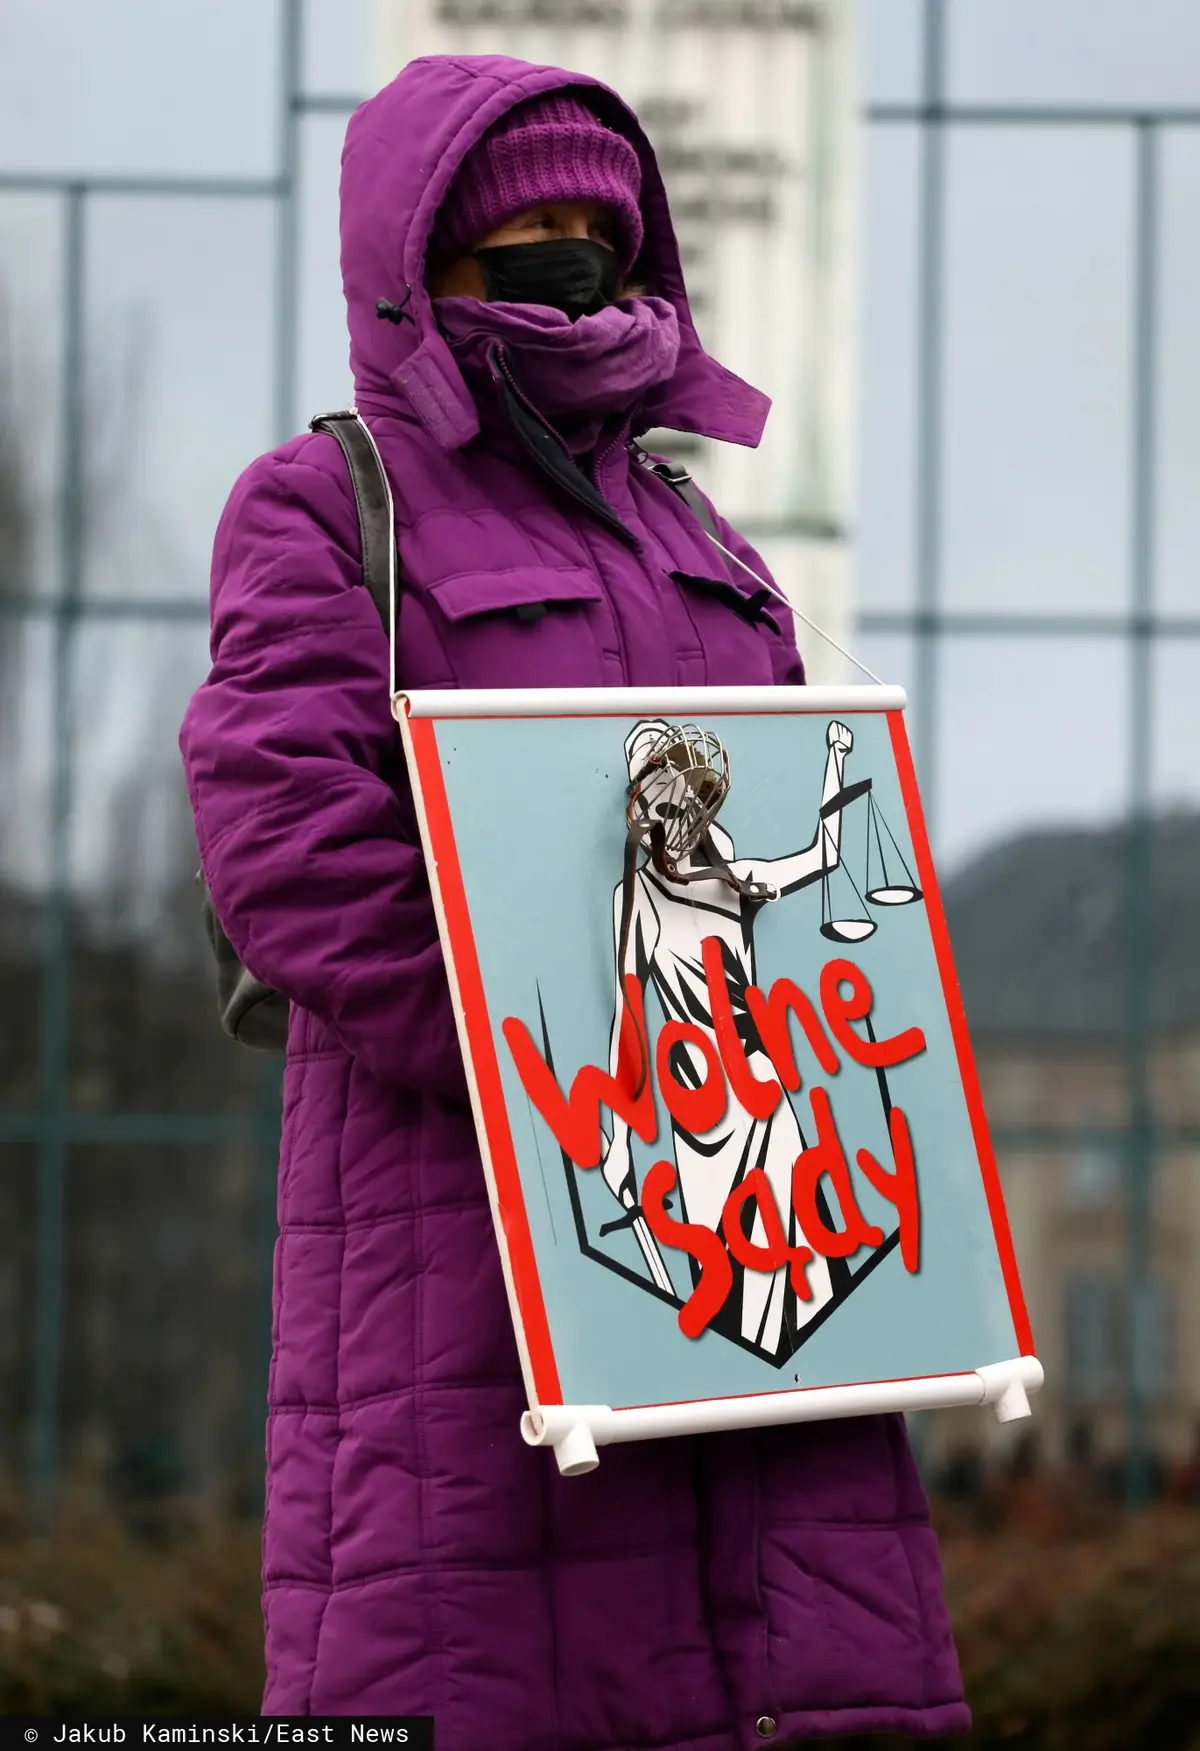 Kobieta trzyma transparent z napisem "wolne sądy"